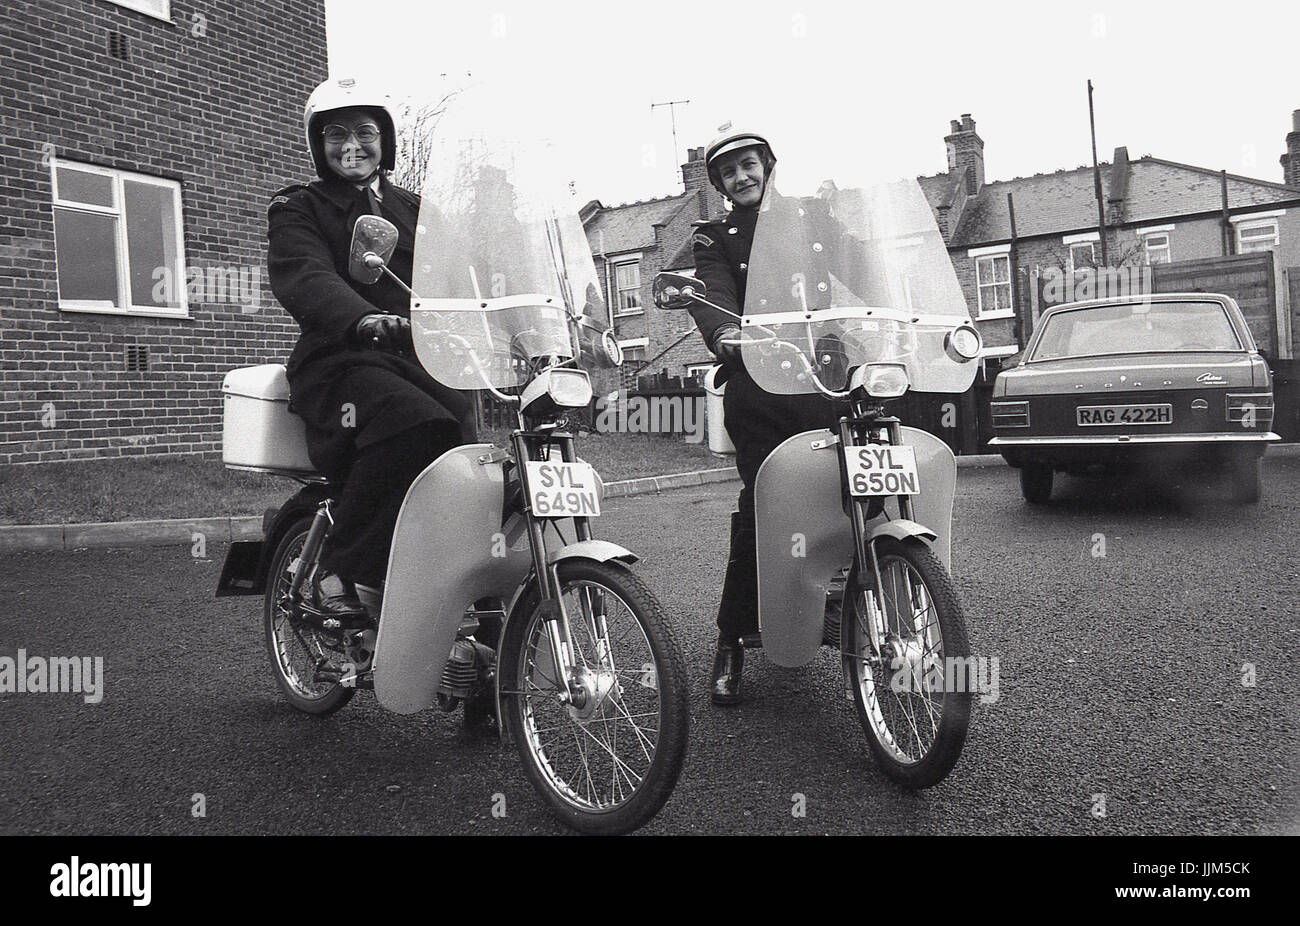 1974, Londra Sud, due femmine operai del traffico sul loro nuovo modo di trasporto per la loro applicazione della legge il lavoro, piccolo agile mopedswith visiere di plastica e fariings. Foto Stock